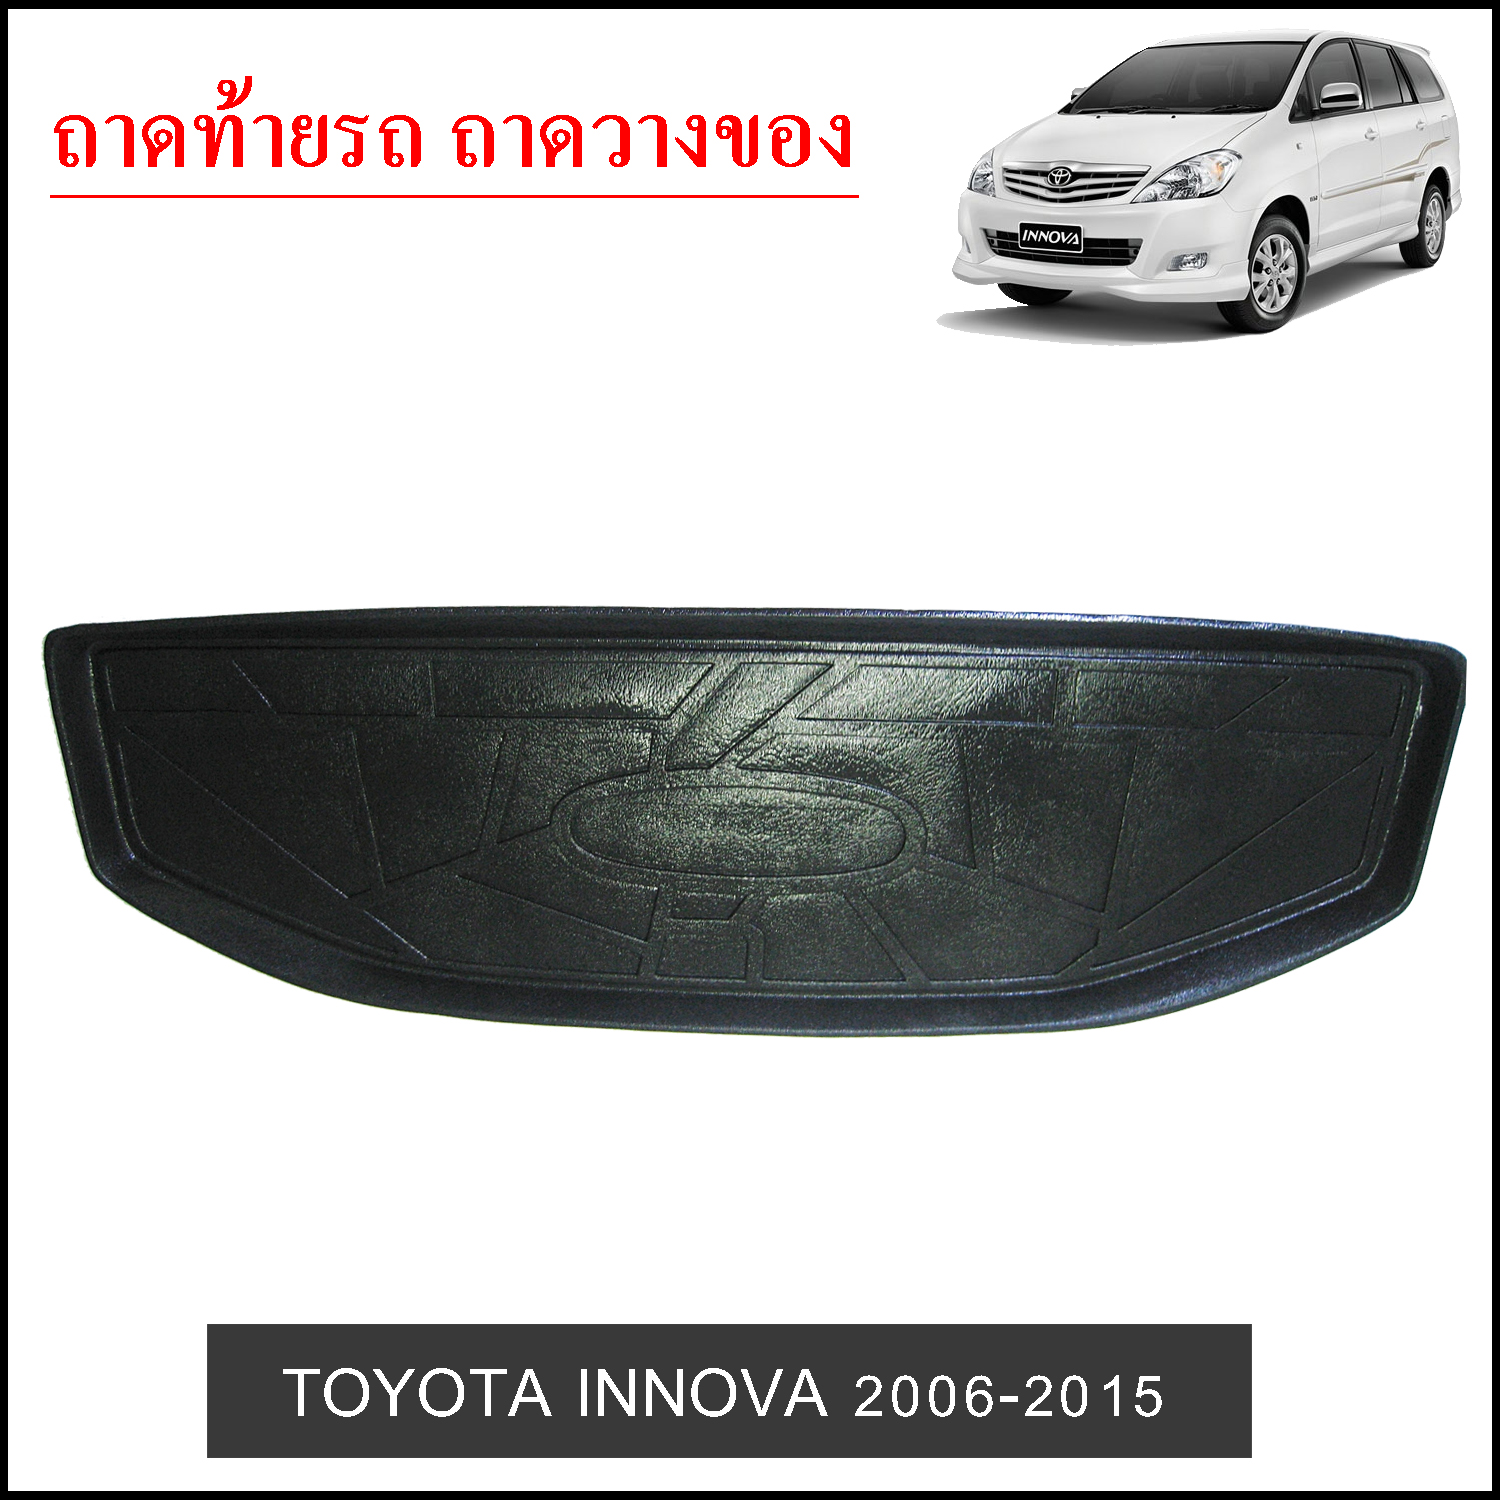 Toyota Innova 2006-2015